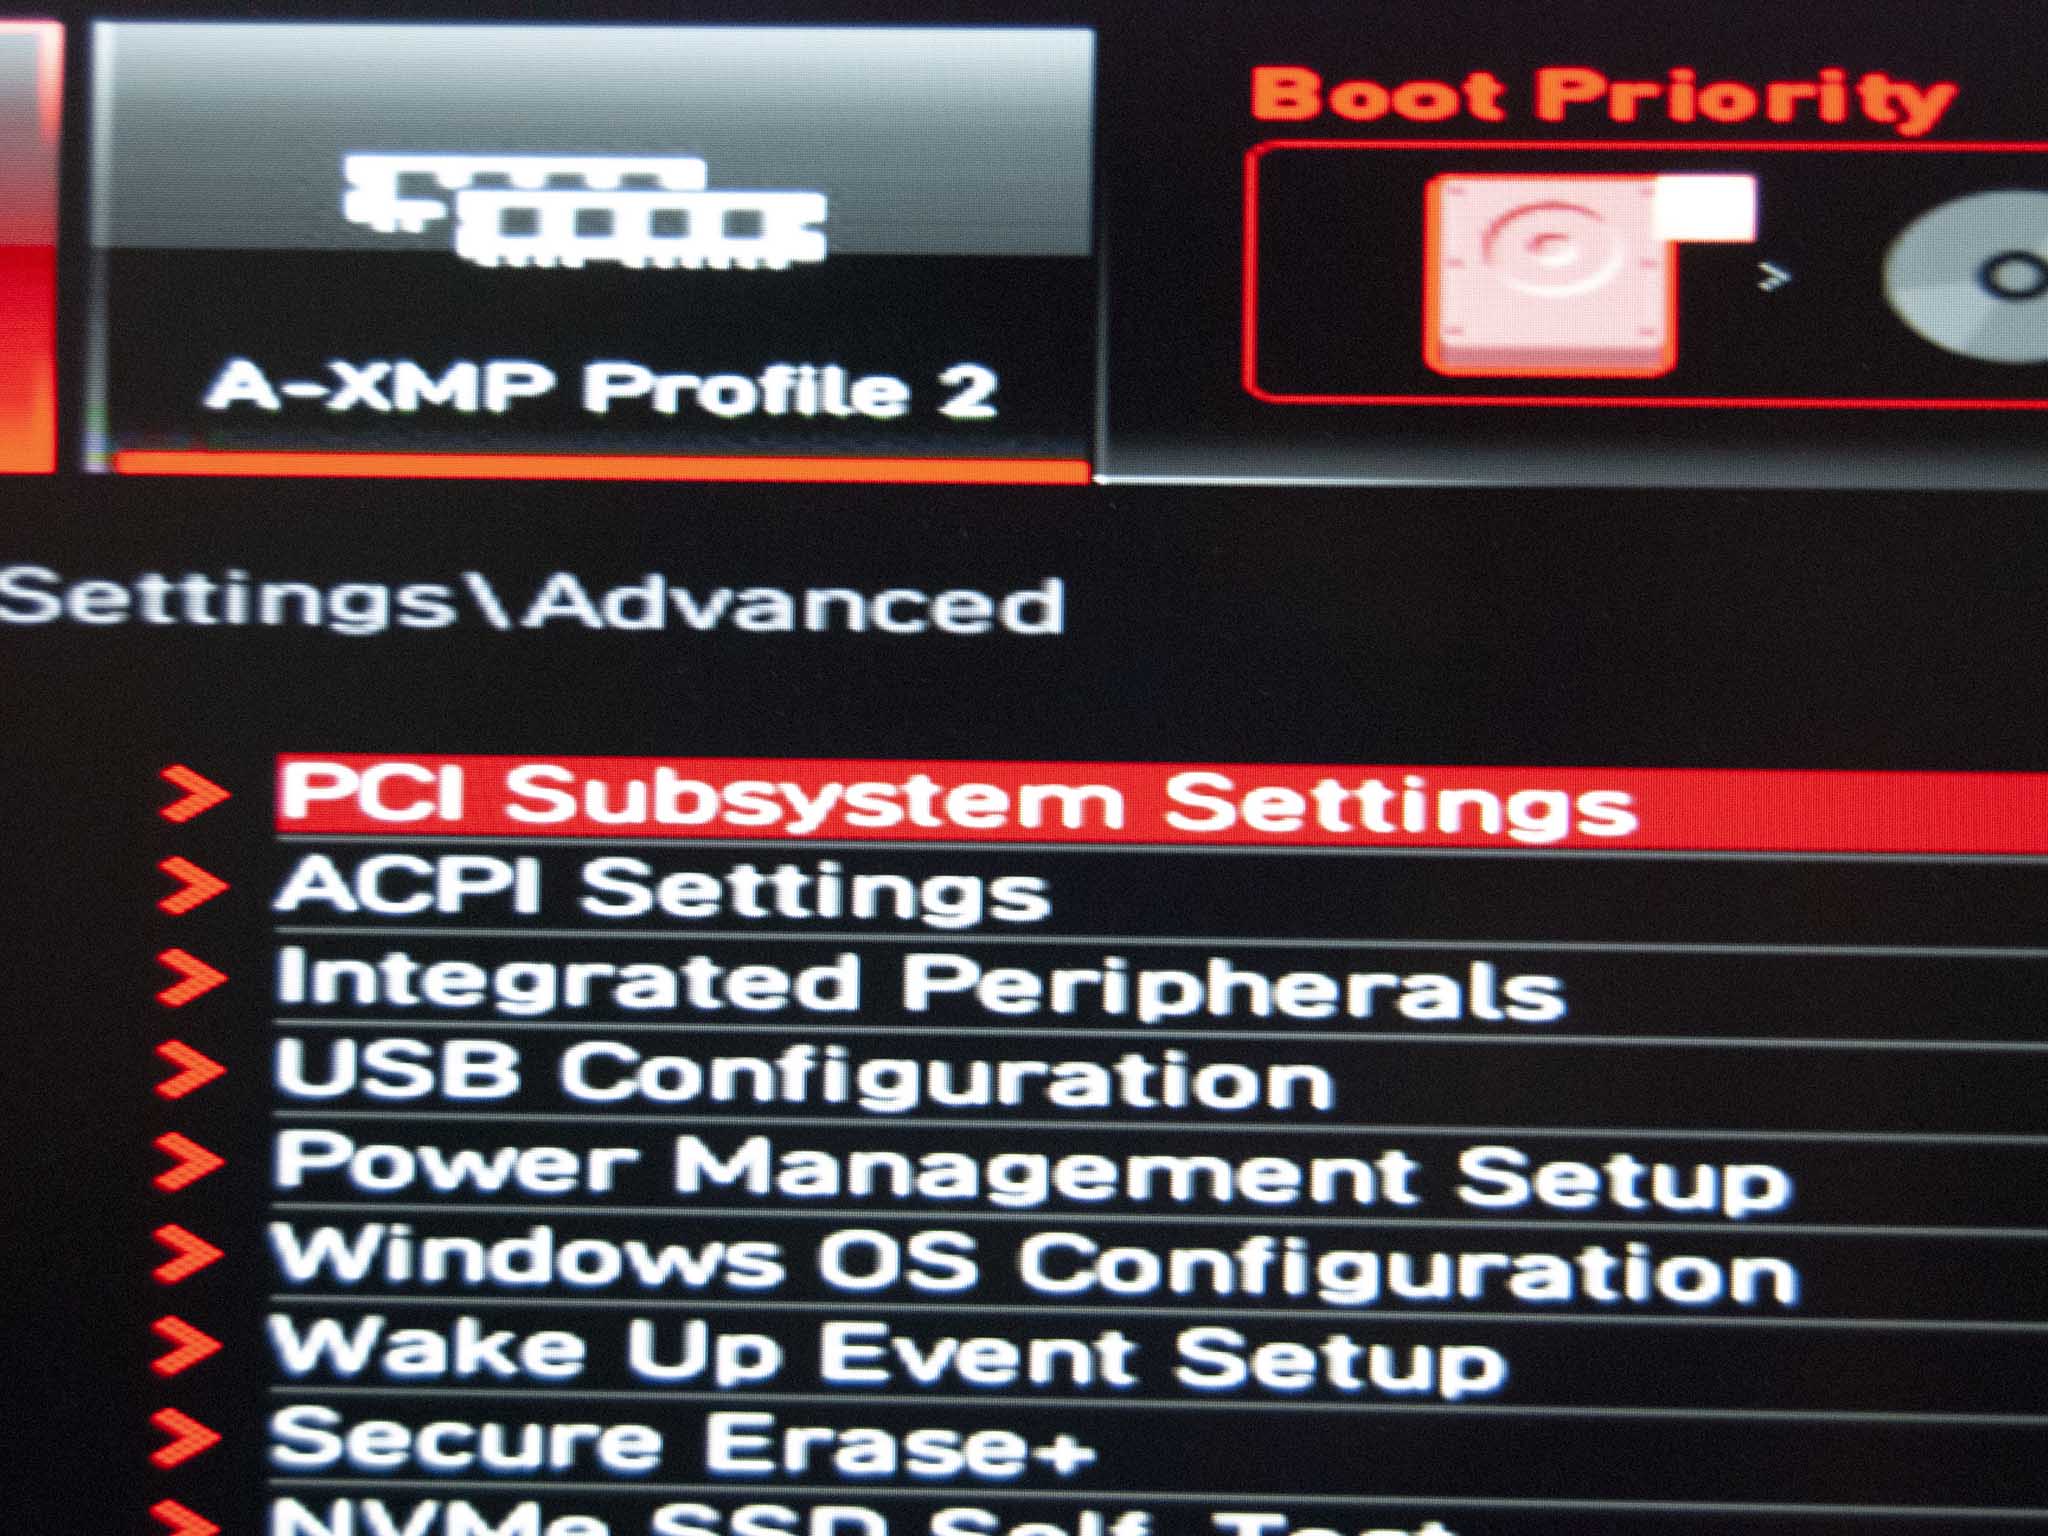 Clique em Configurações do subsistema PCI